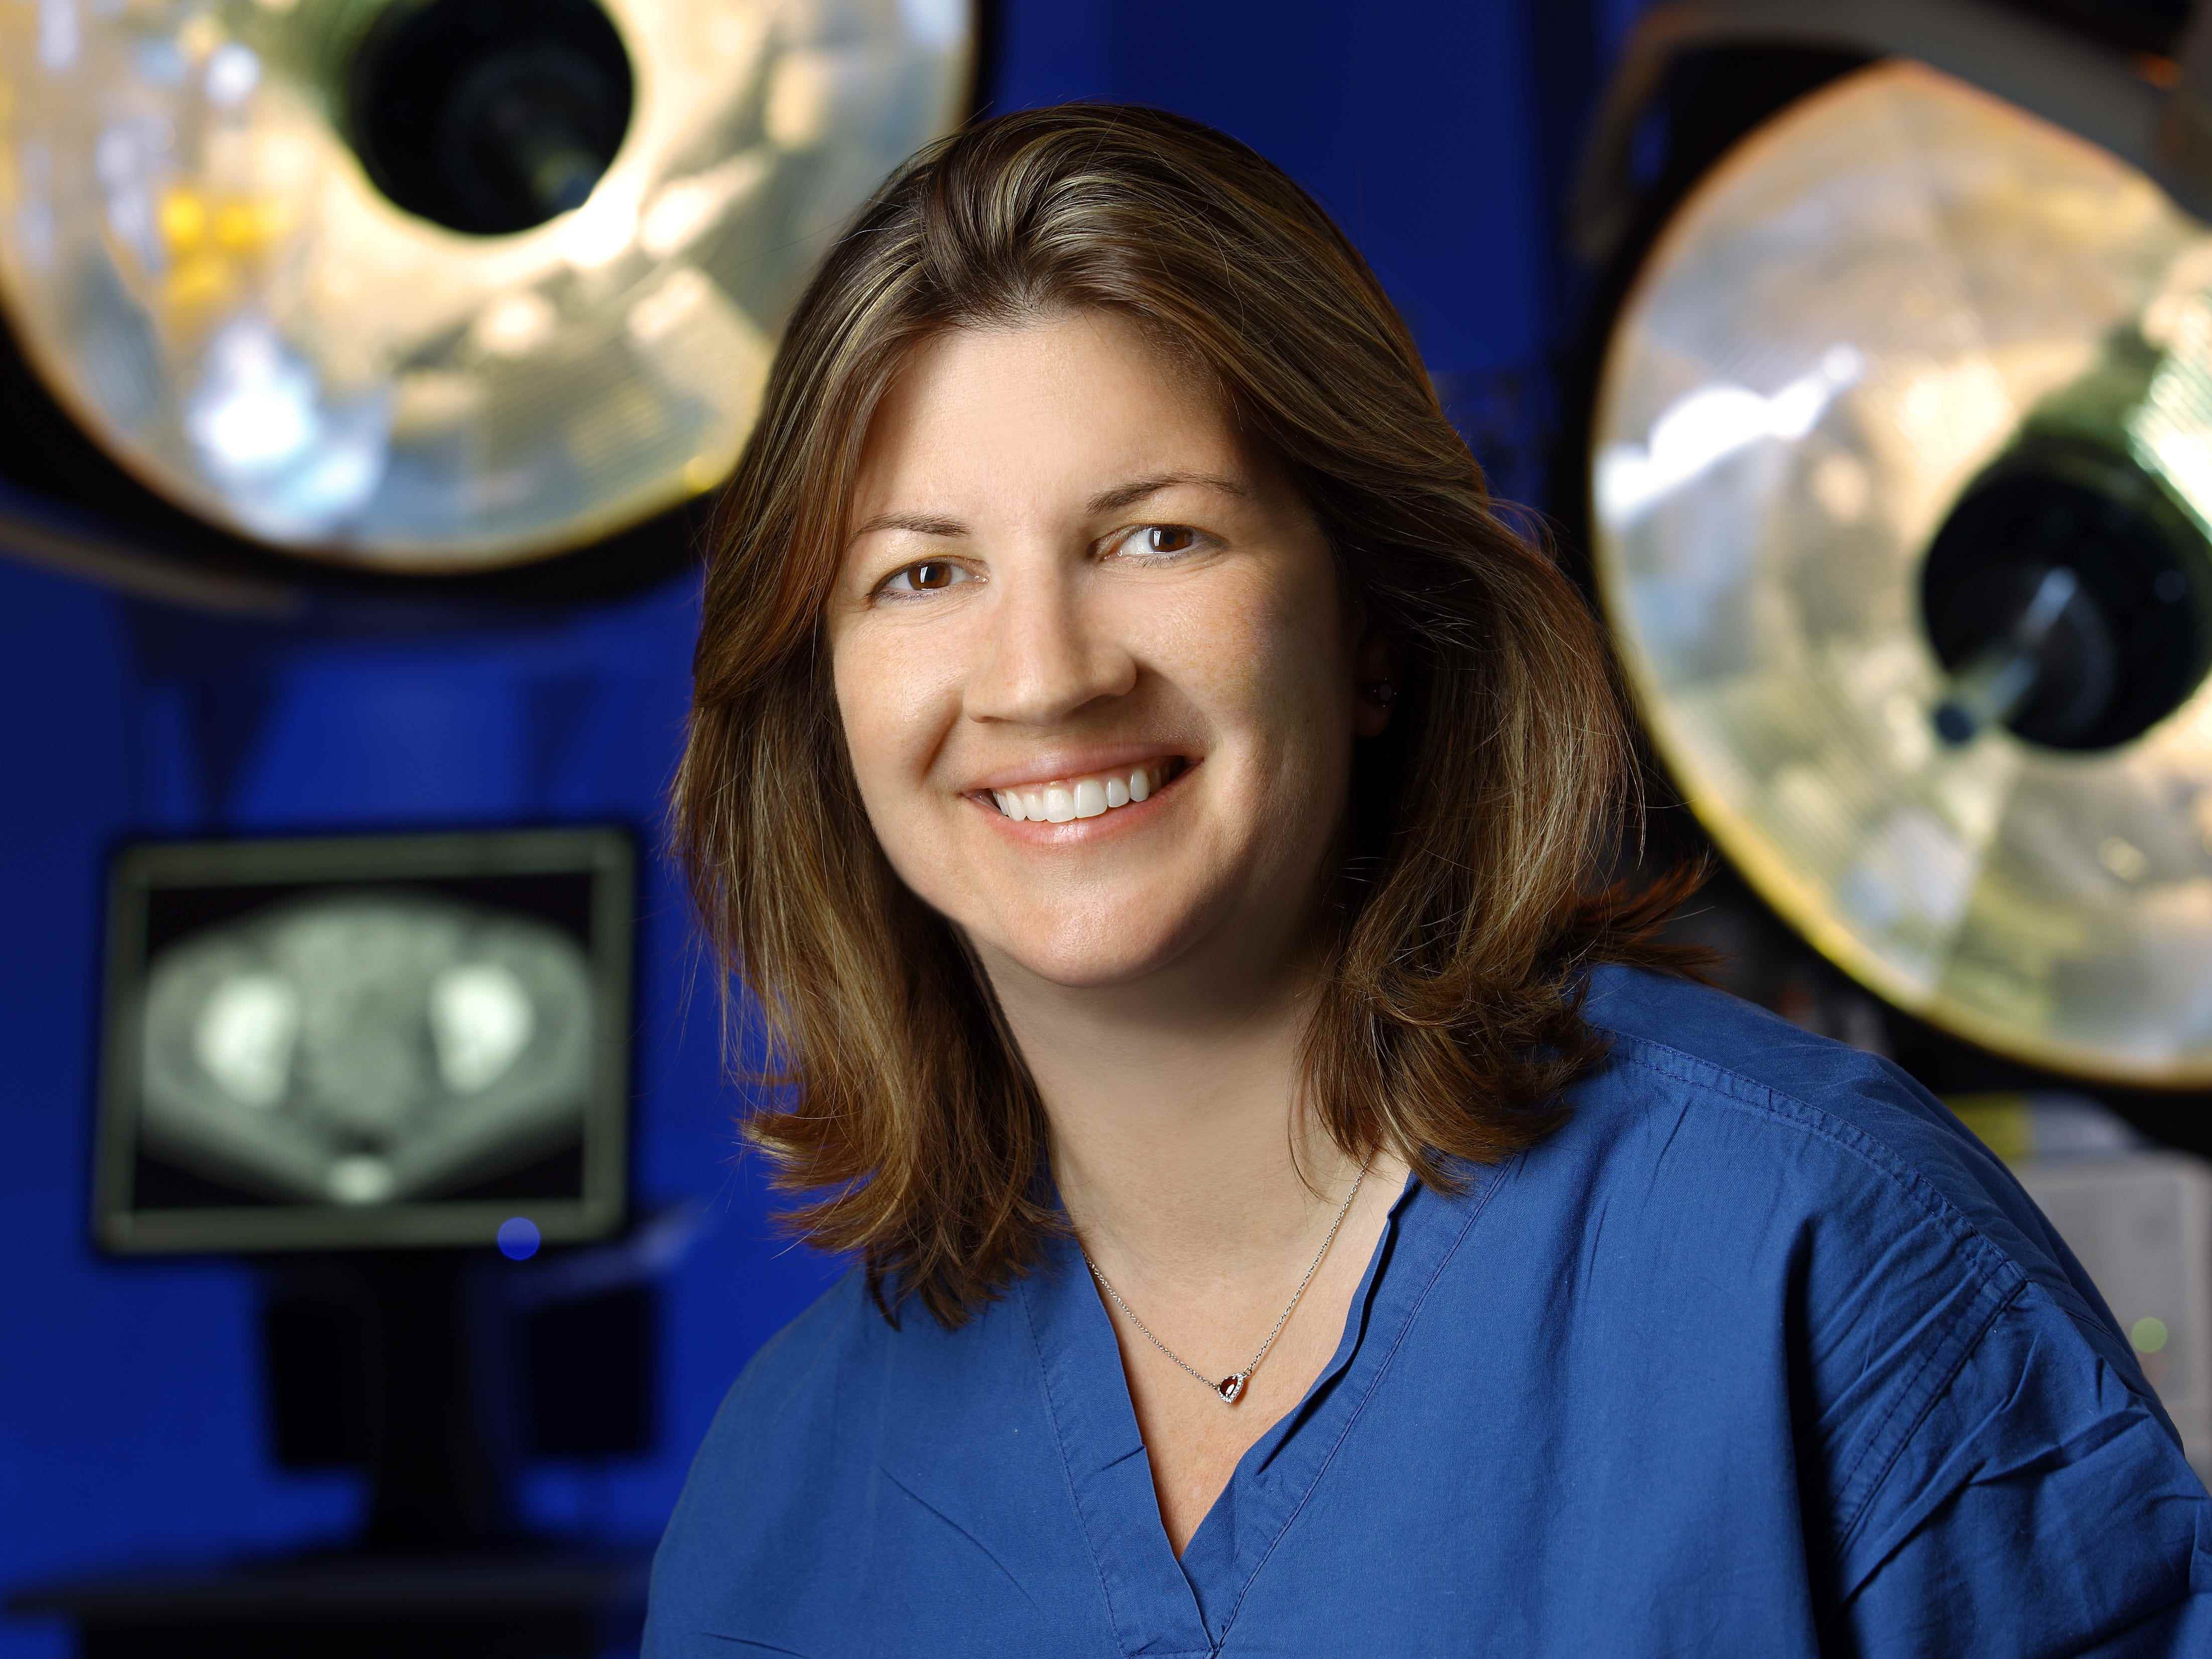 Dr. Amanda Nickles Fader, stellvertretende Vorsitzende, gynäkologische chirurgische Operationen bei Johns Hopkins